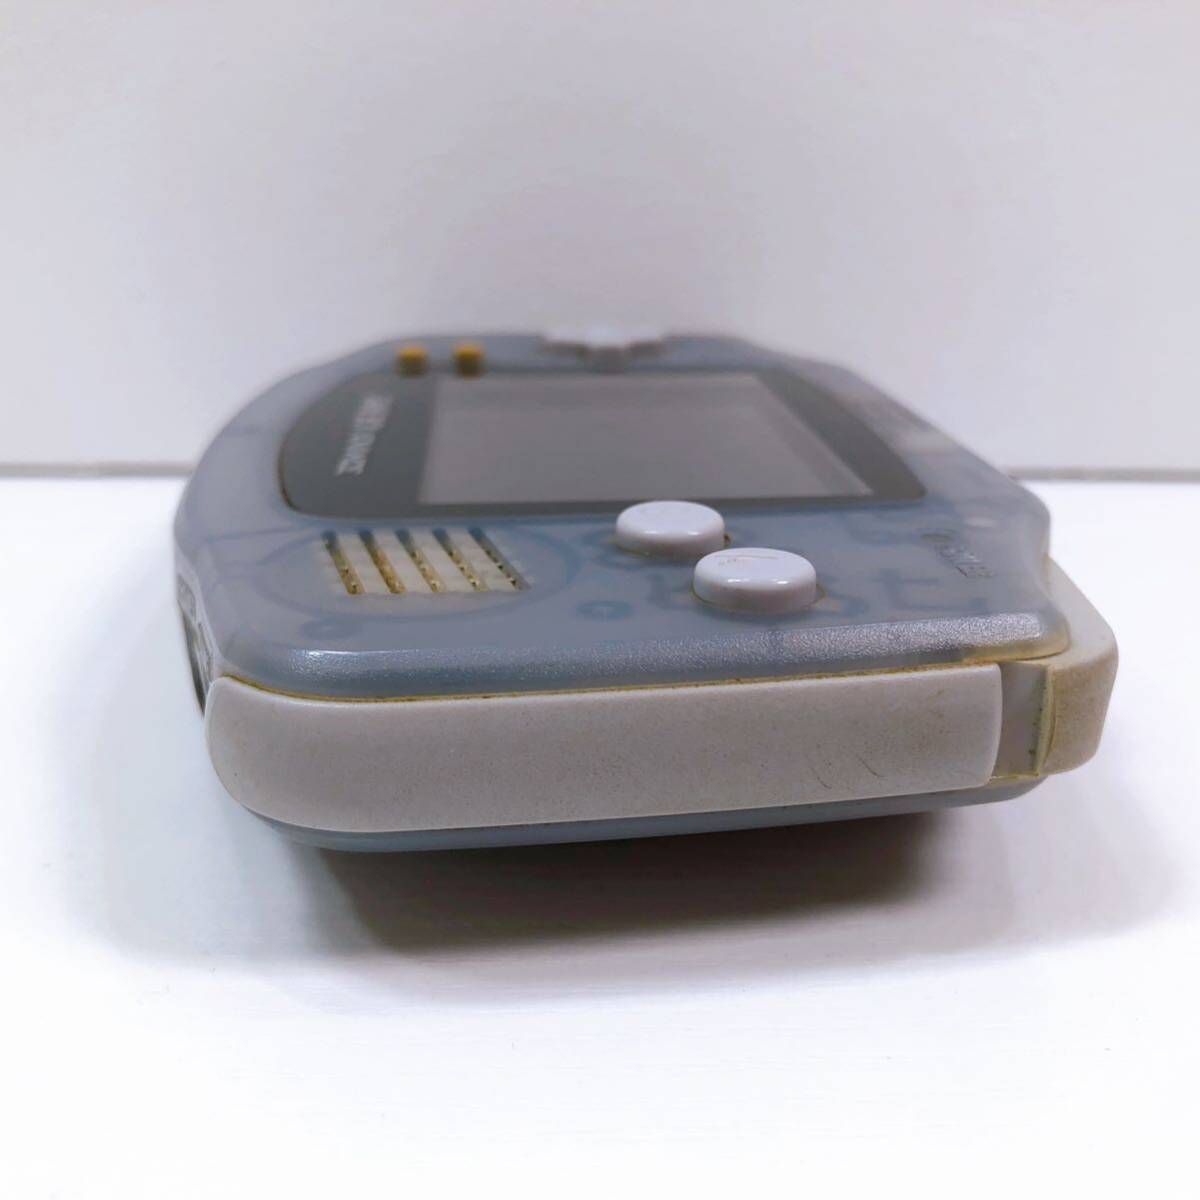 170【中古】Nintendo GAMEBOY ADVANCE 本体 AGB-001 ゲームボーイアドバンス ミルキーブルー 任天堂 電池フタなし 動作未確認 現状品の画像5